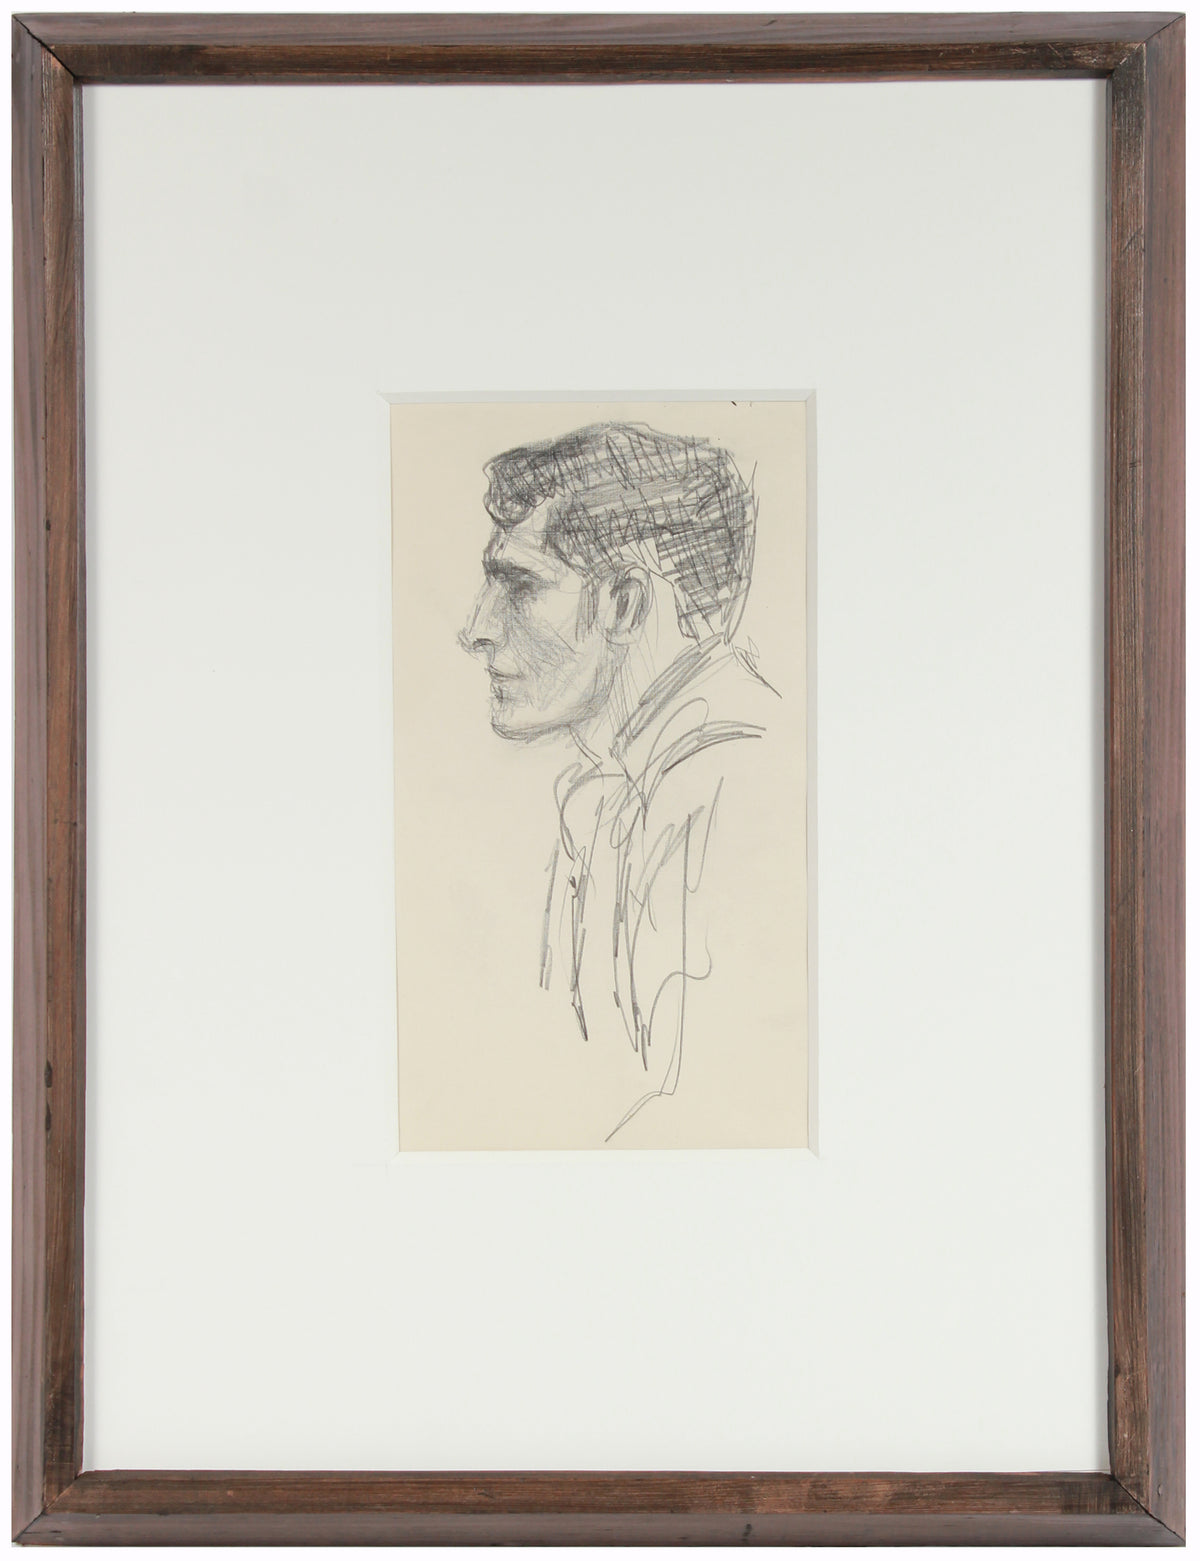 Modernist Portrait in Profile &lt;br&gt;1940-50s Graphite &lt;br&gt;&lt;br&gt;#A8410